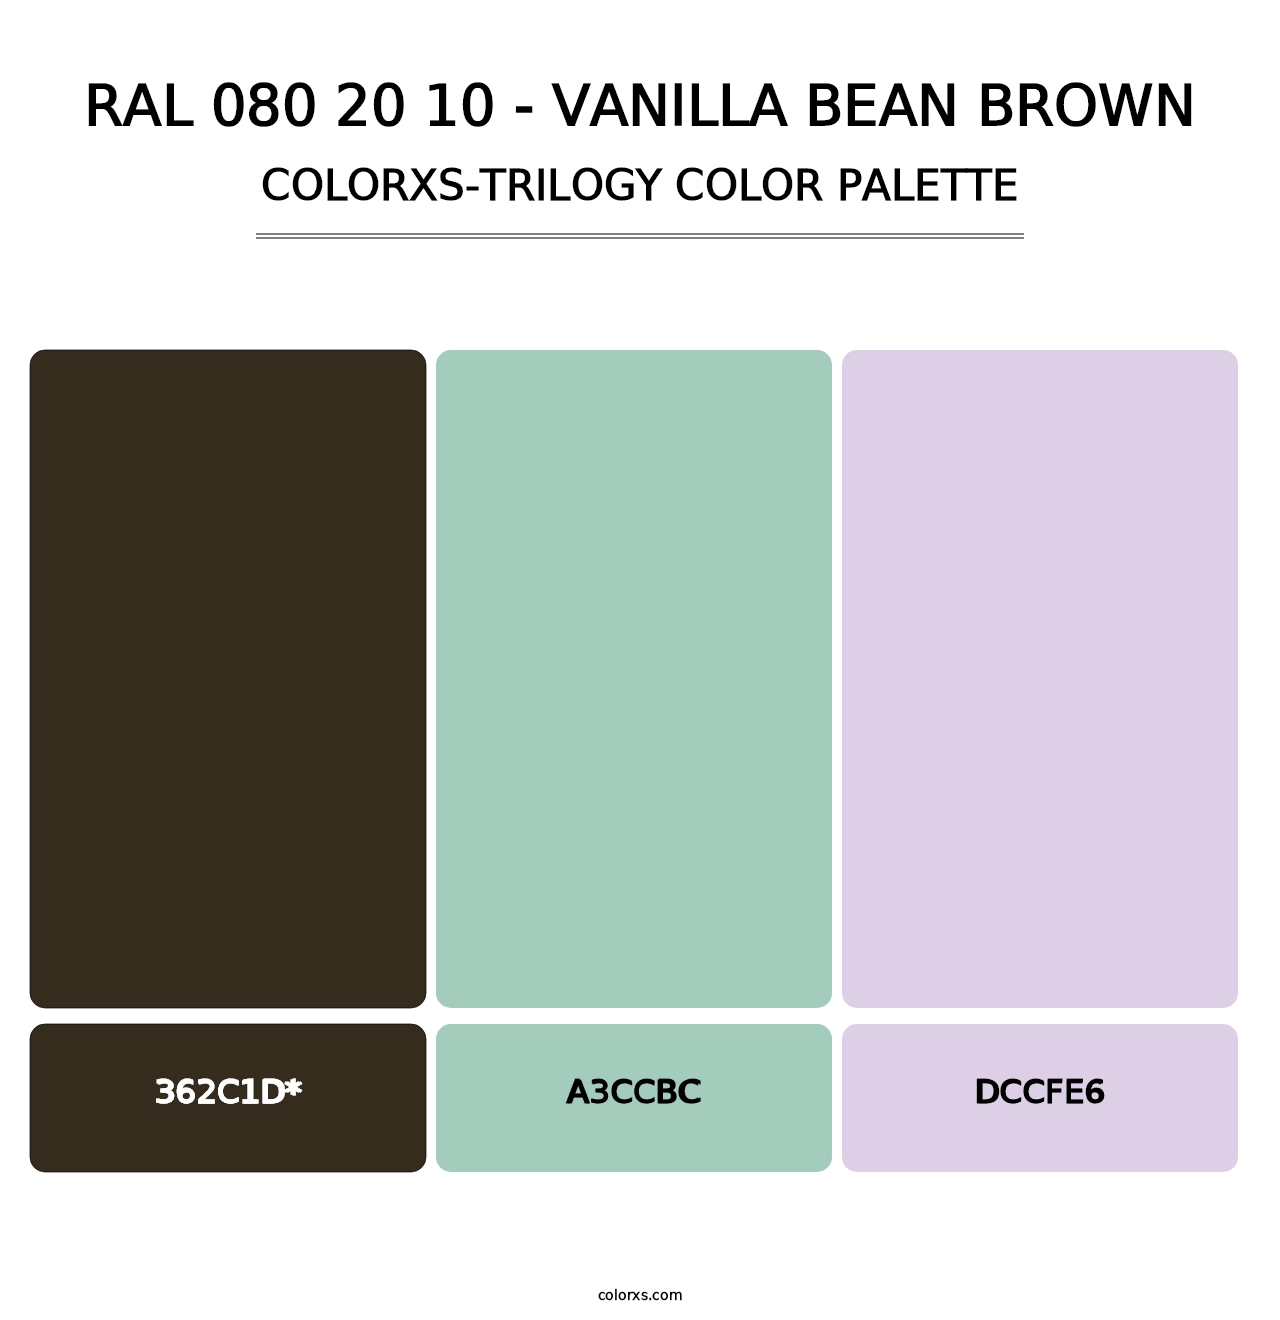 RAL 080 20 10 - Vanilla Bean Brown - Colorxs Trilogy Palette